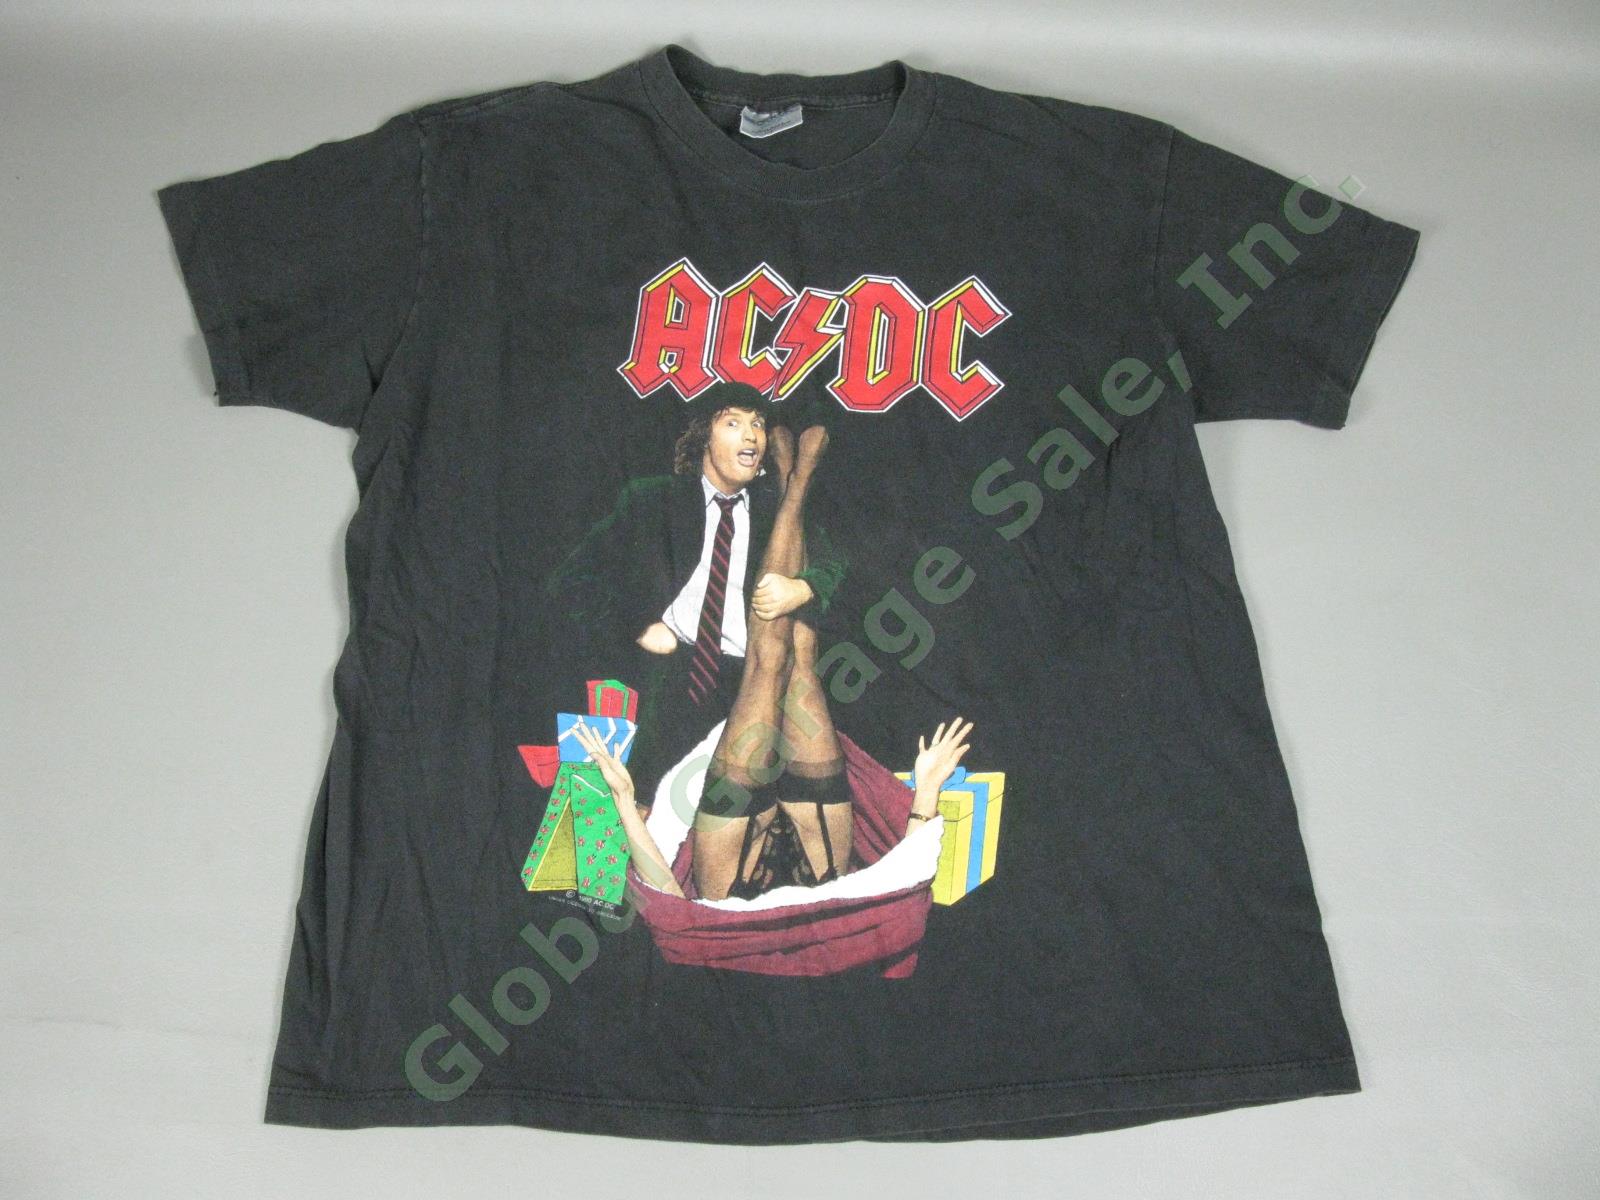 2 Vintage AC/DC T-Shirts Lot Mistress For Christmas Concert Tour & TNT Size M/L 1